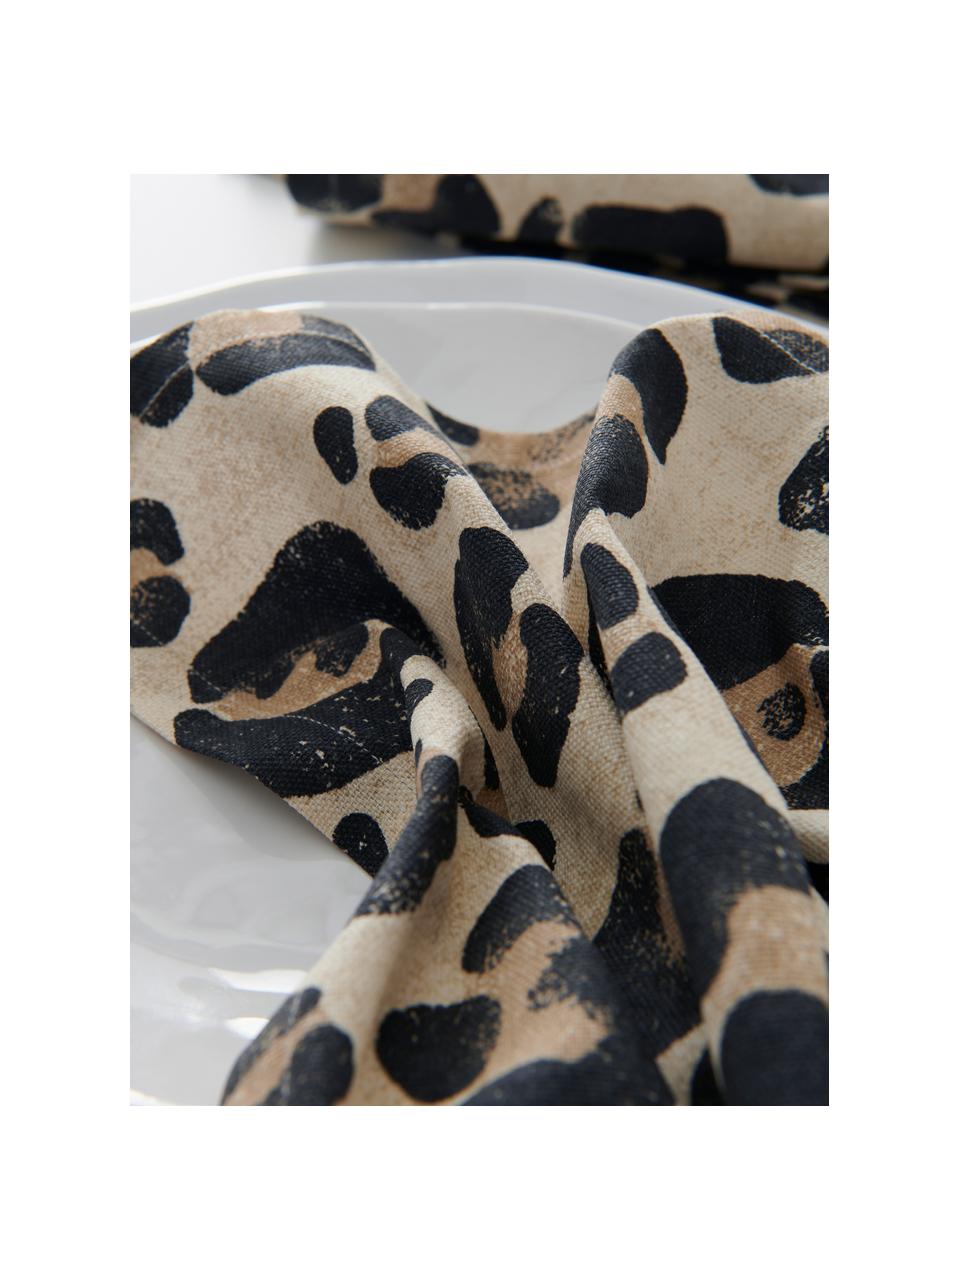 Serviettes de table en coton imprimé léopard Jill, 2 pièces, 100 % coton, Beige, noir, larg. 45 x long. 45 cm